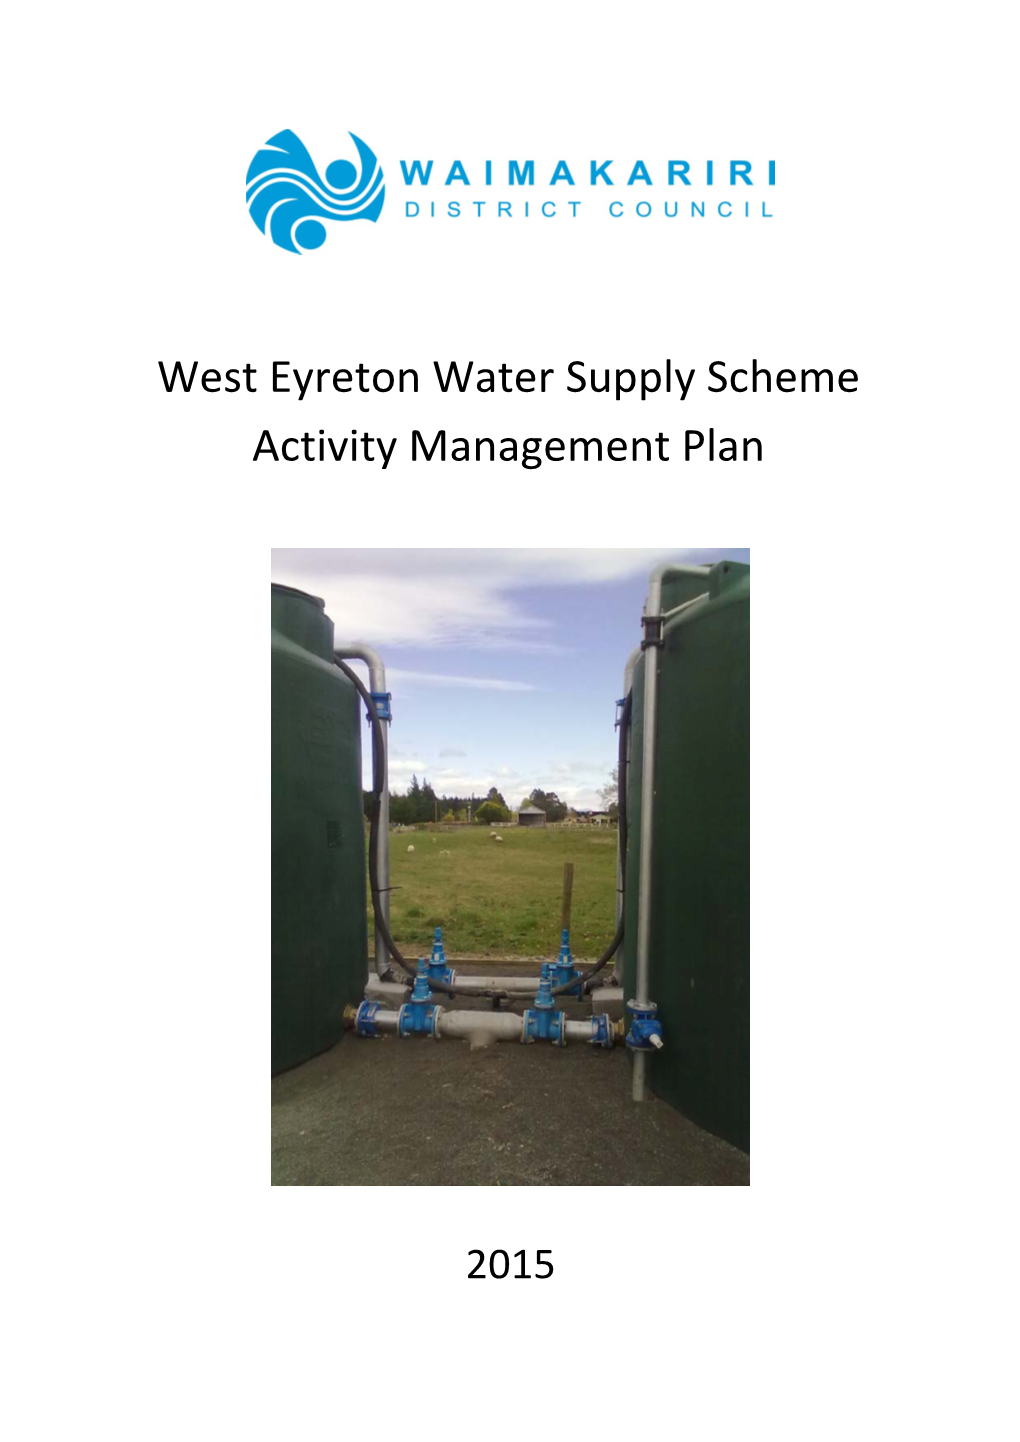 West Eyreton Water Supply Scheme Activity Management Plan